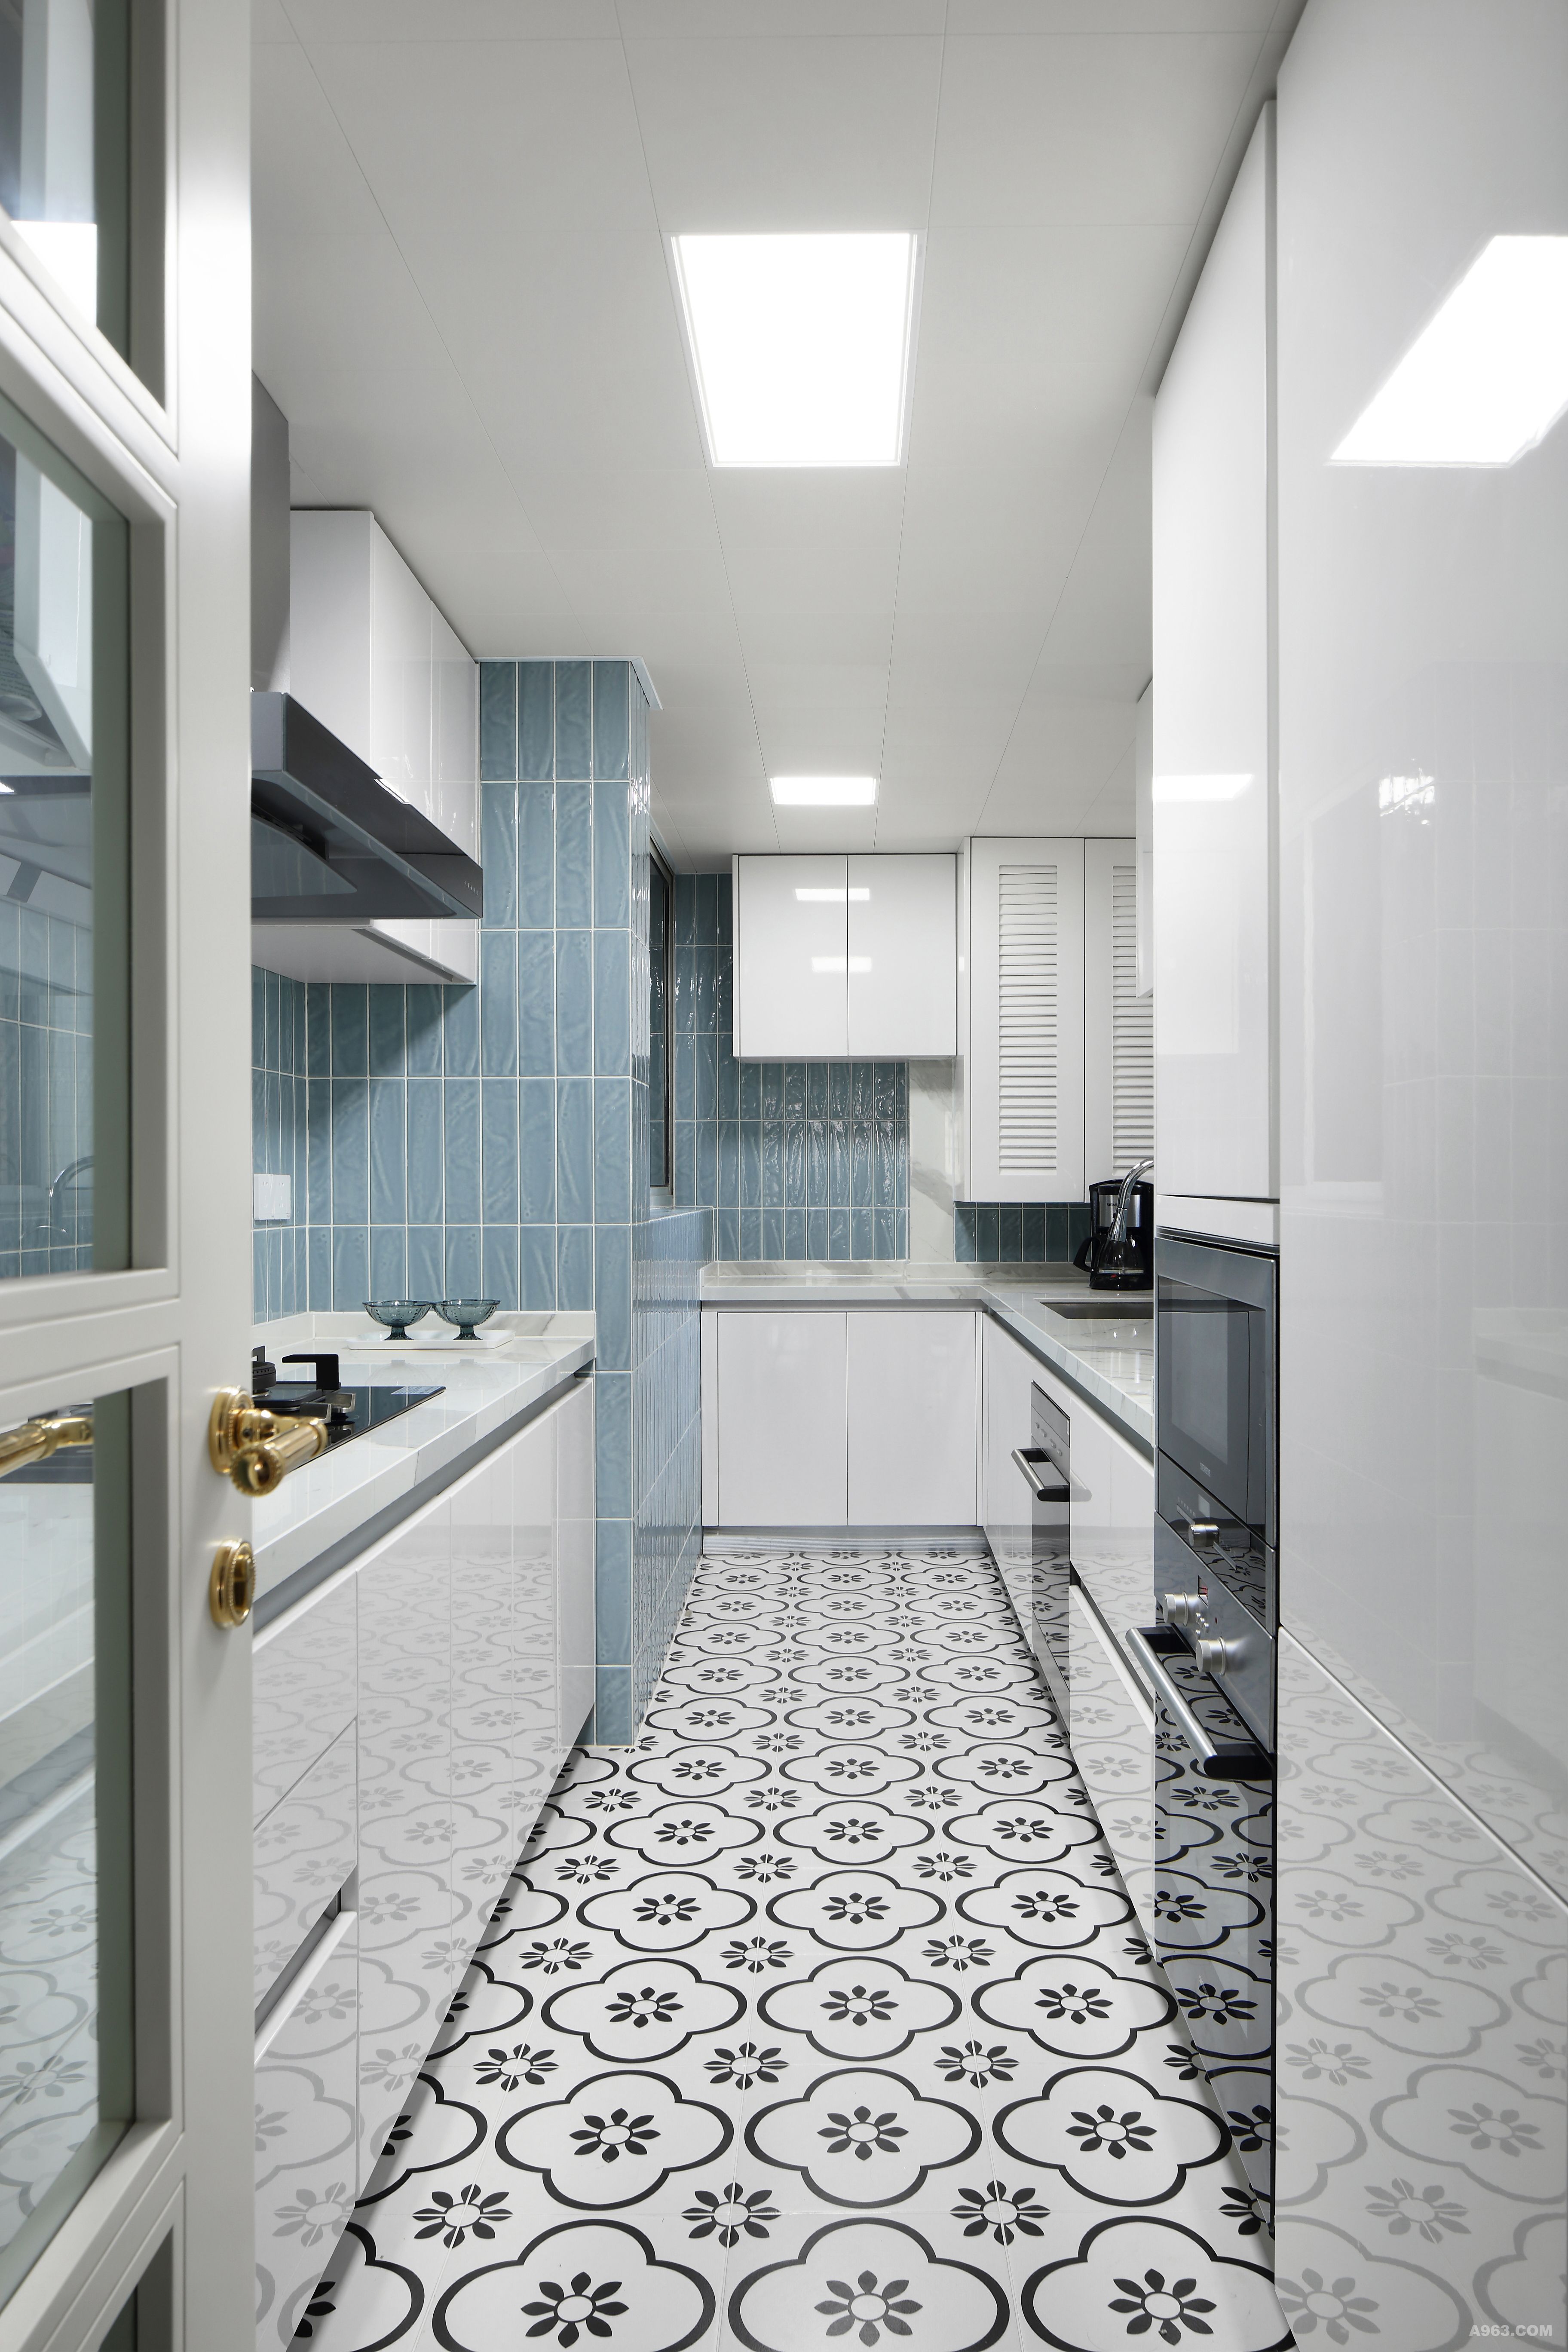 厨房的配色以白色为主，给人清爽不油腻，并添加了蓝色纹理墙砖凸显层次，上下都做了收纳柜增加收纳空间。